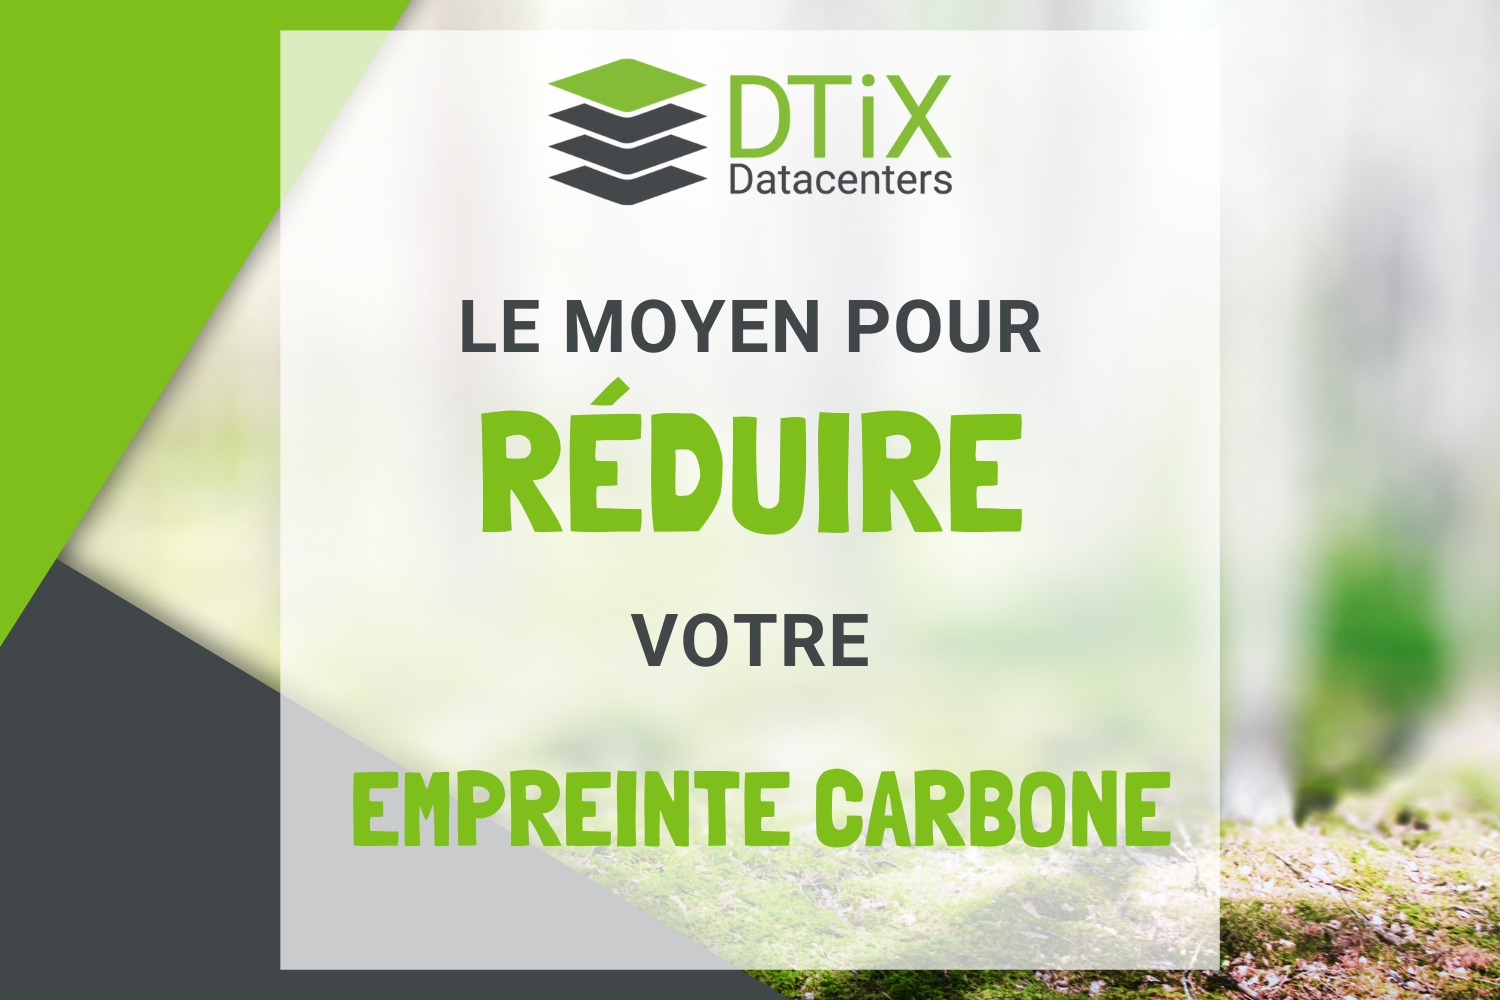 Image de l'optimisation énergétique et du bilan carbone - Réseau de datacenters - efficacité énergétique - DTiX Datacenters